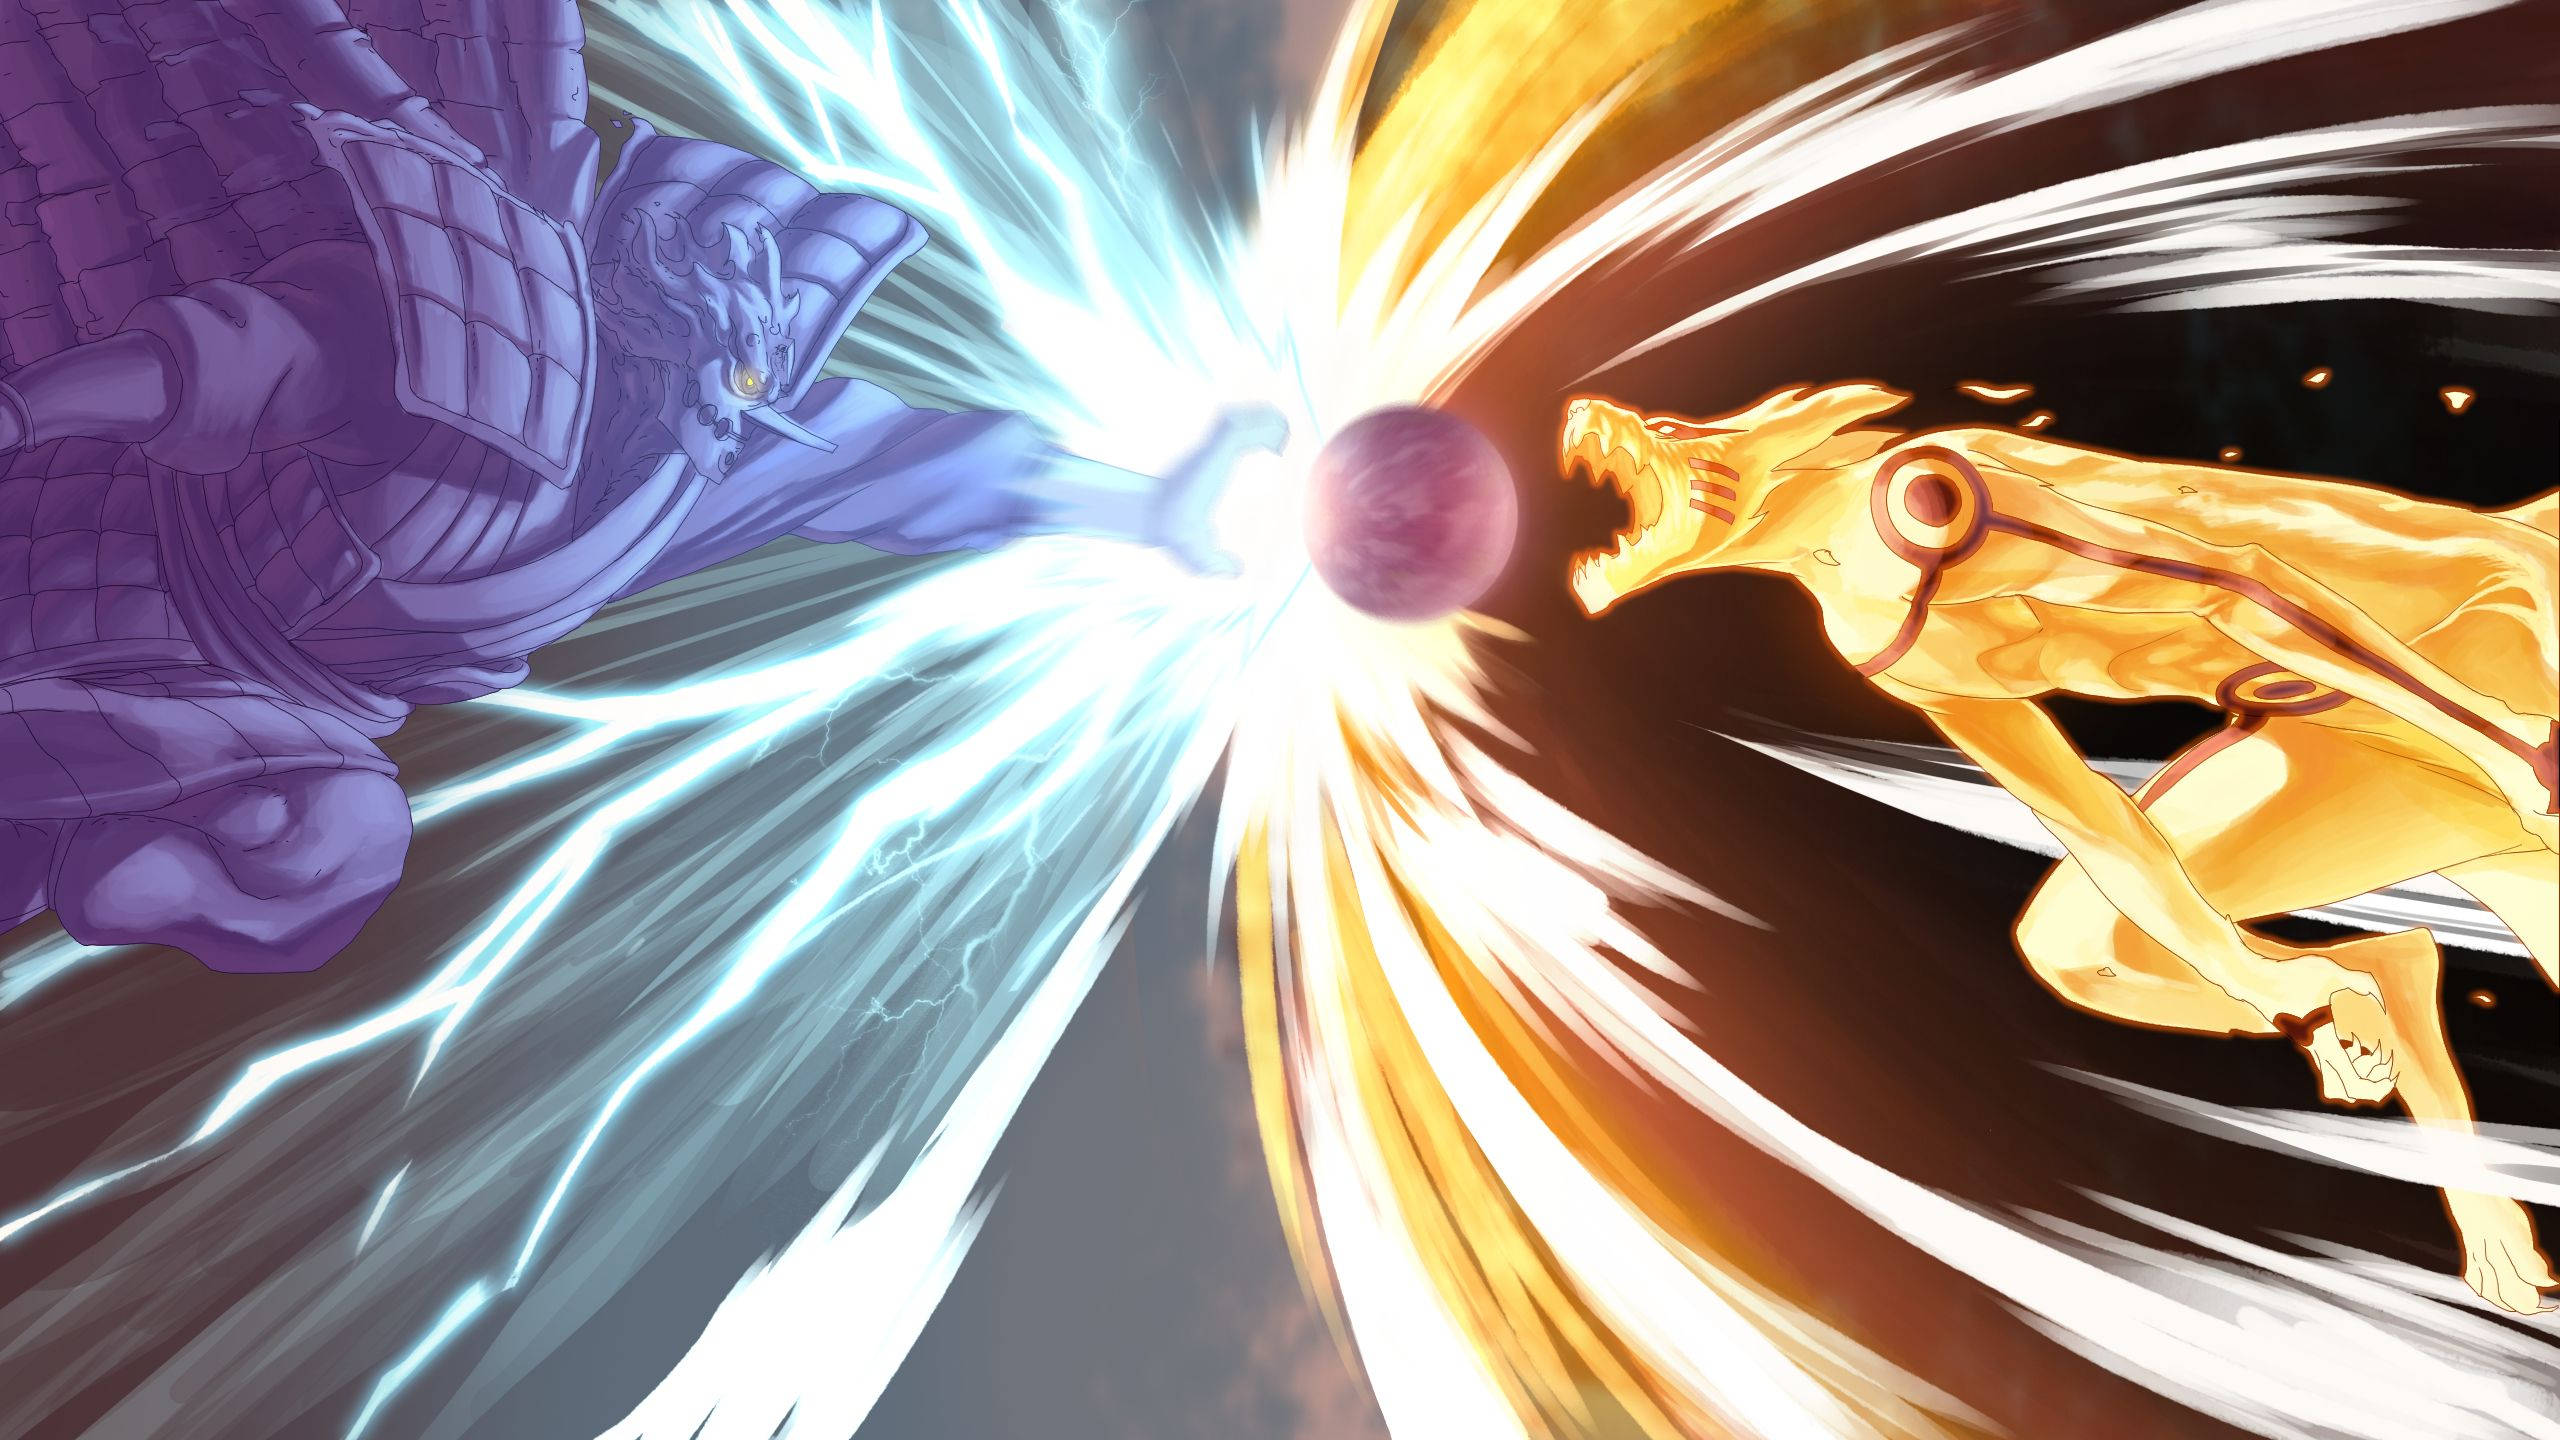 Anime Naruto Kurama Versus Sasuke Suppress Beast Background